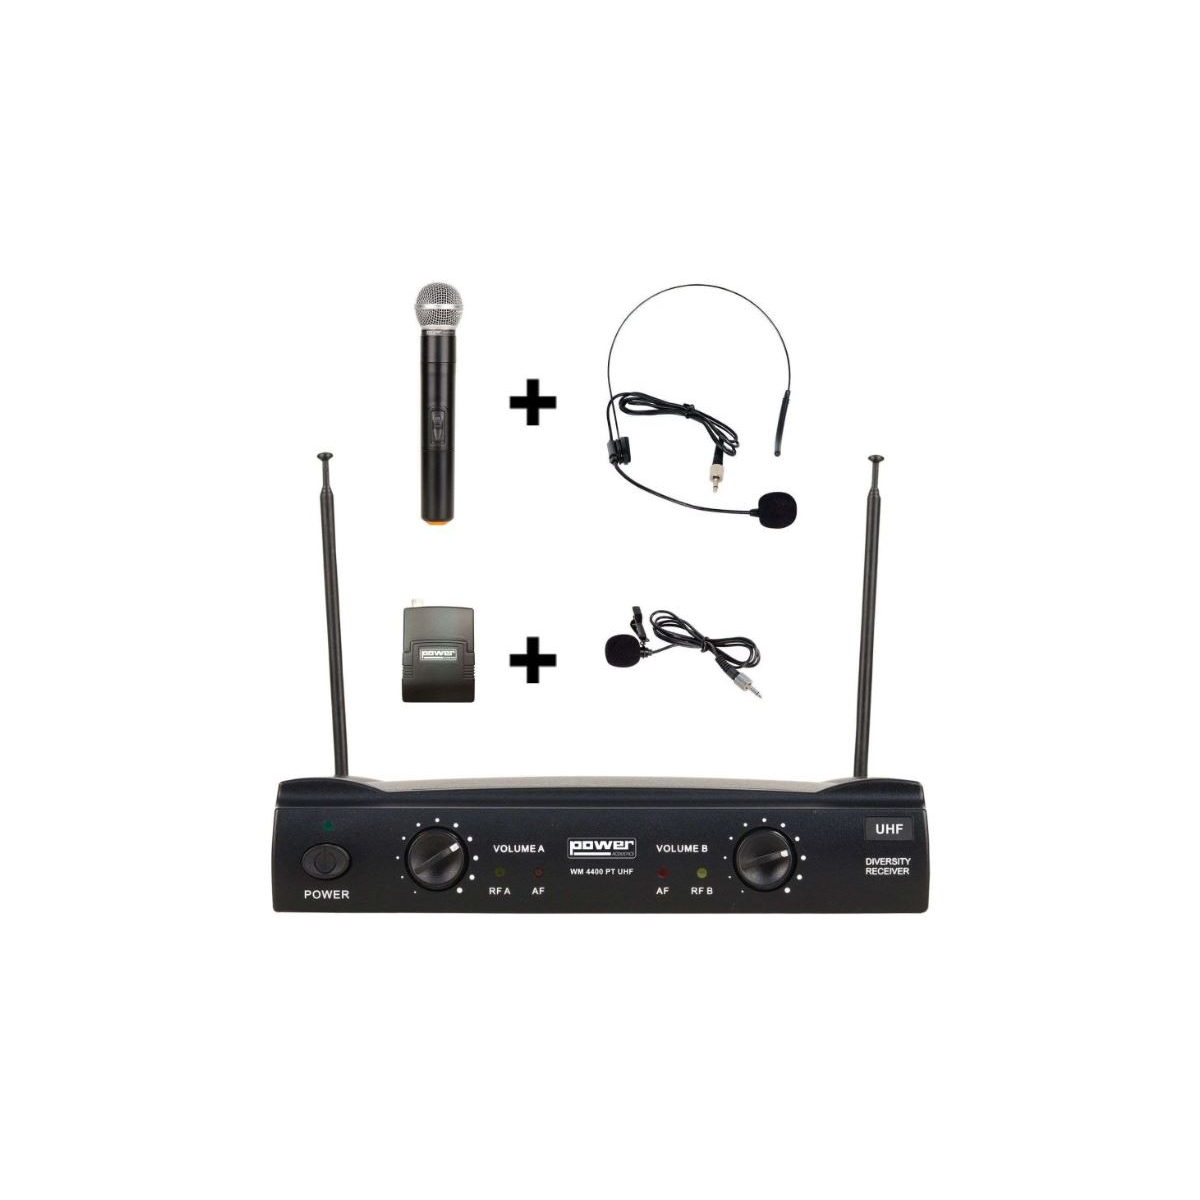 Micros chant sans fil - Power Acoustics - Sonorisation - WM 4400 PT UHF GR8